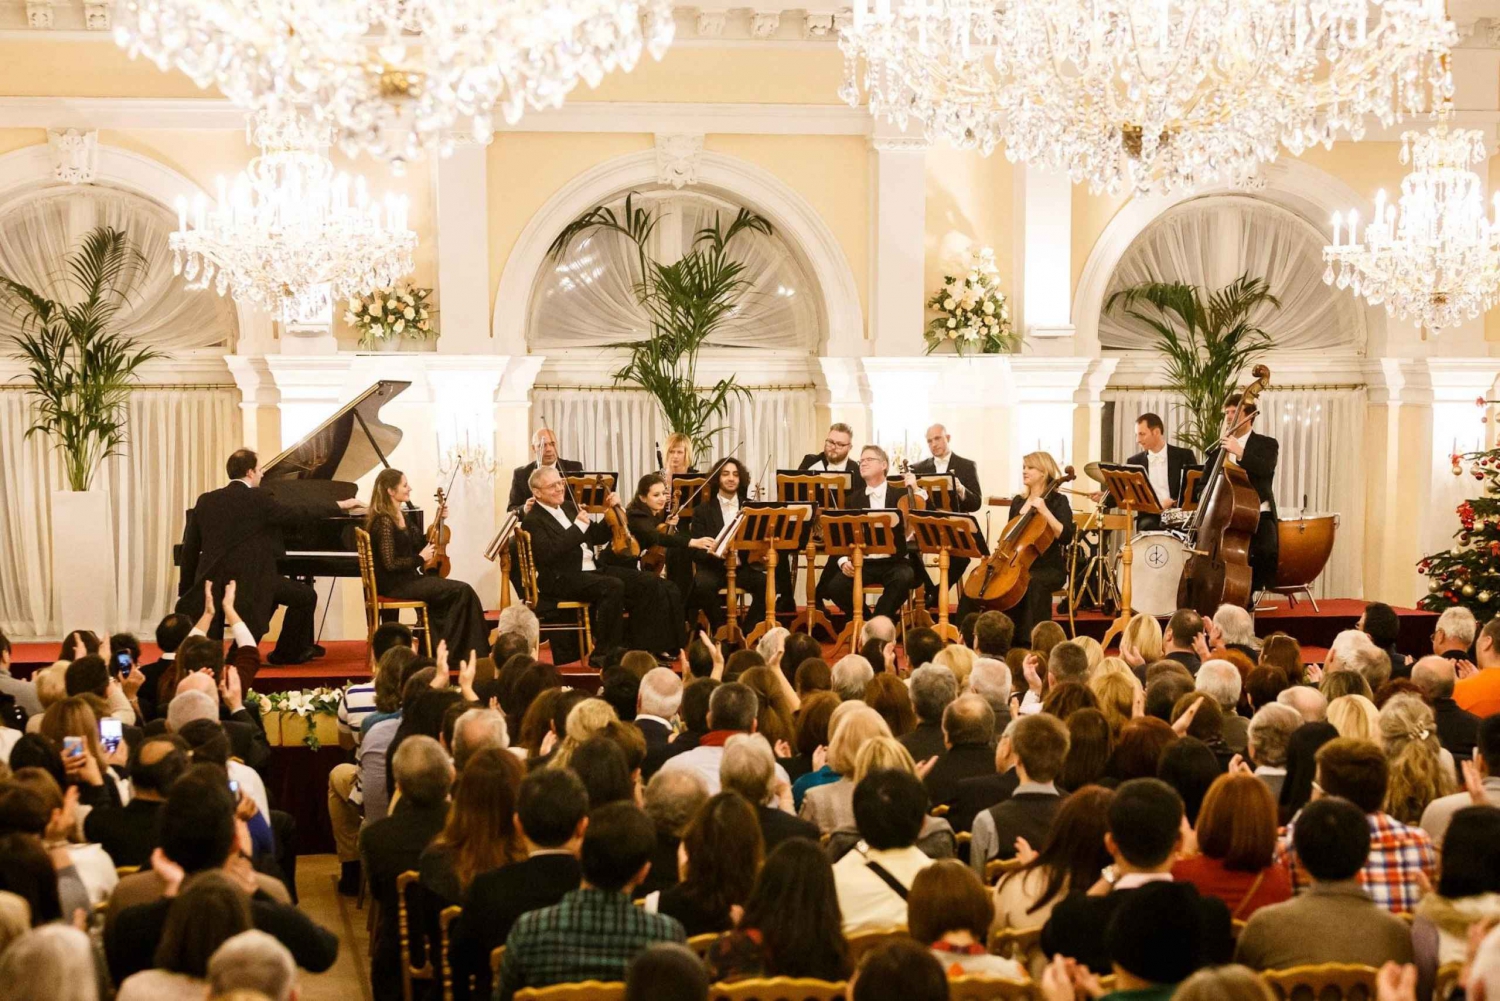 Wiedeń: Gala noworoczna Strauss & Mozart w Kursalon